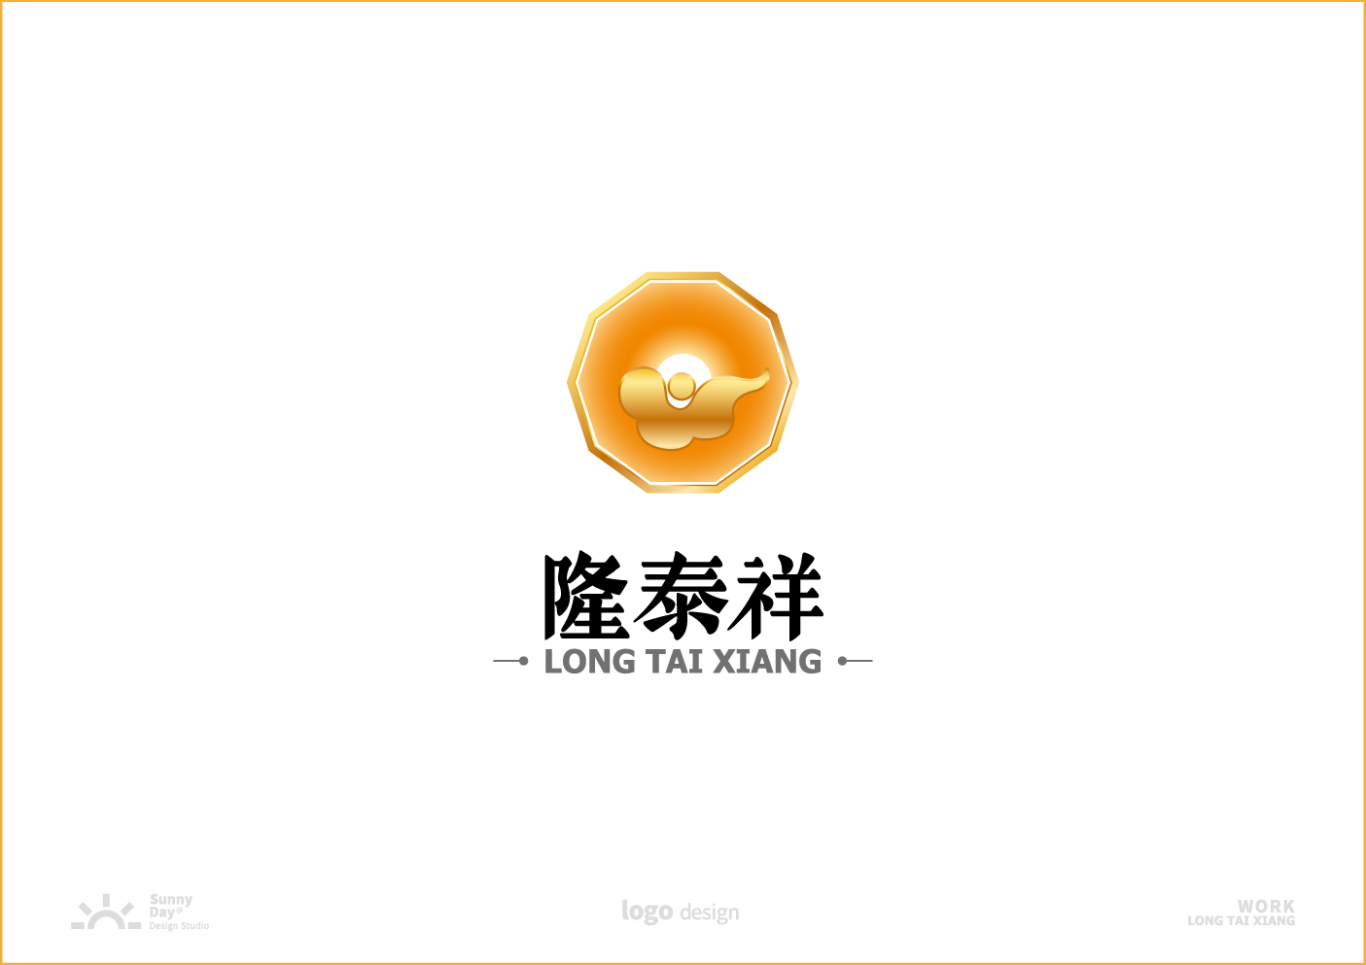 隆泰祥黃龍玉品牌LOGO設計圖3